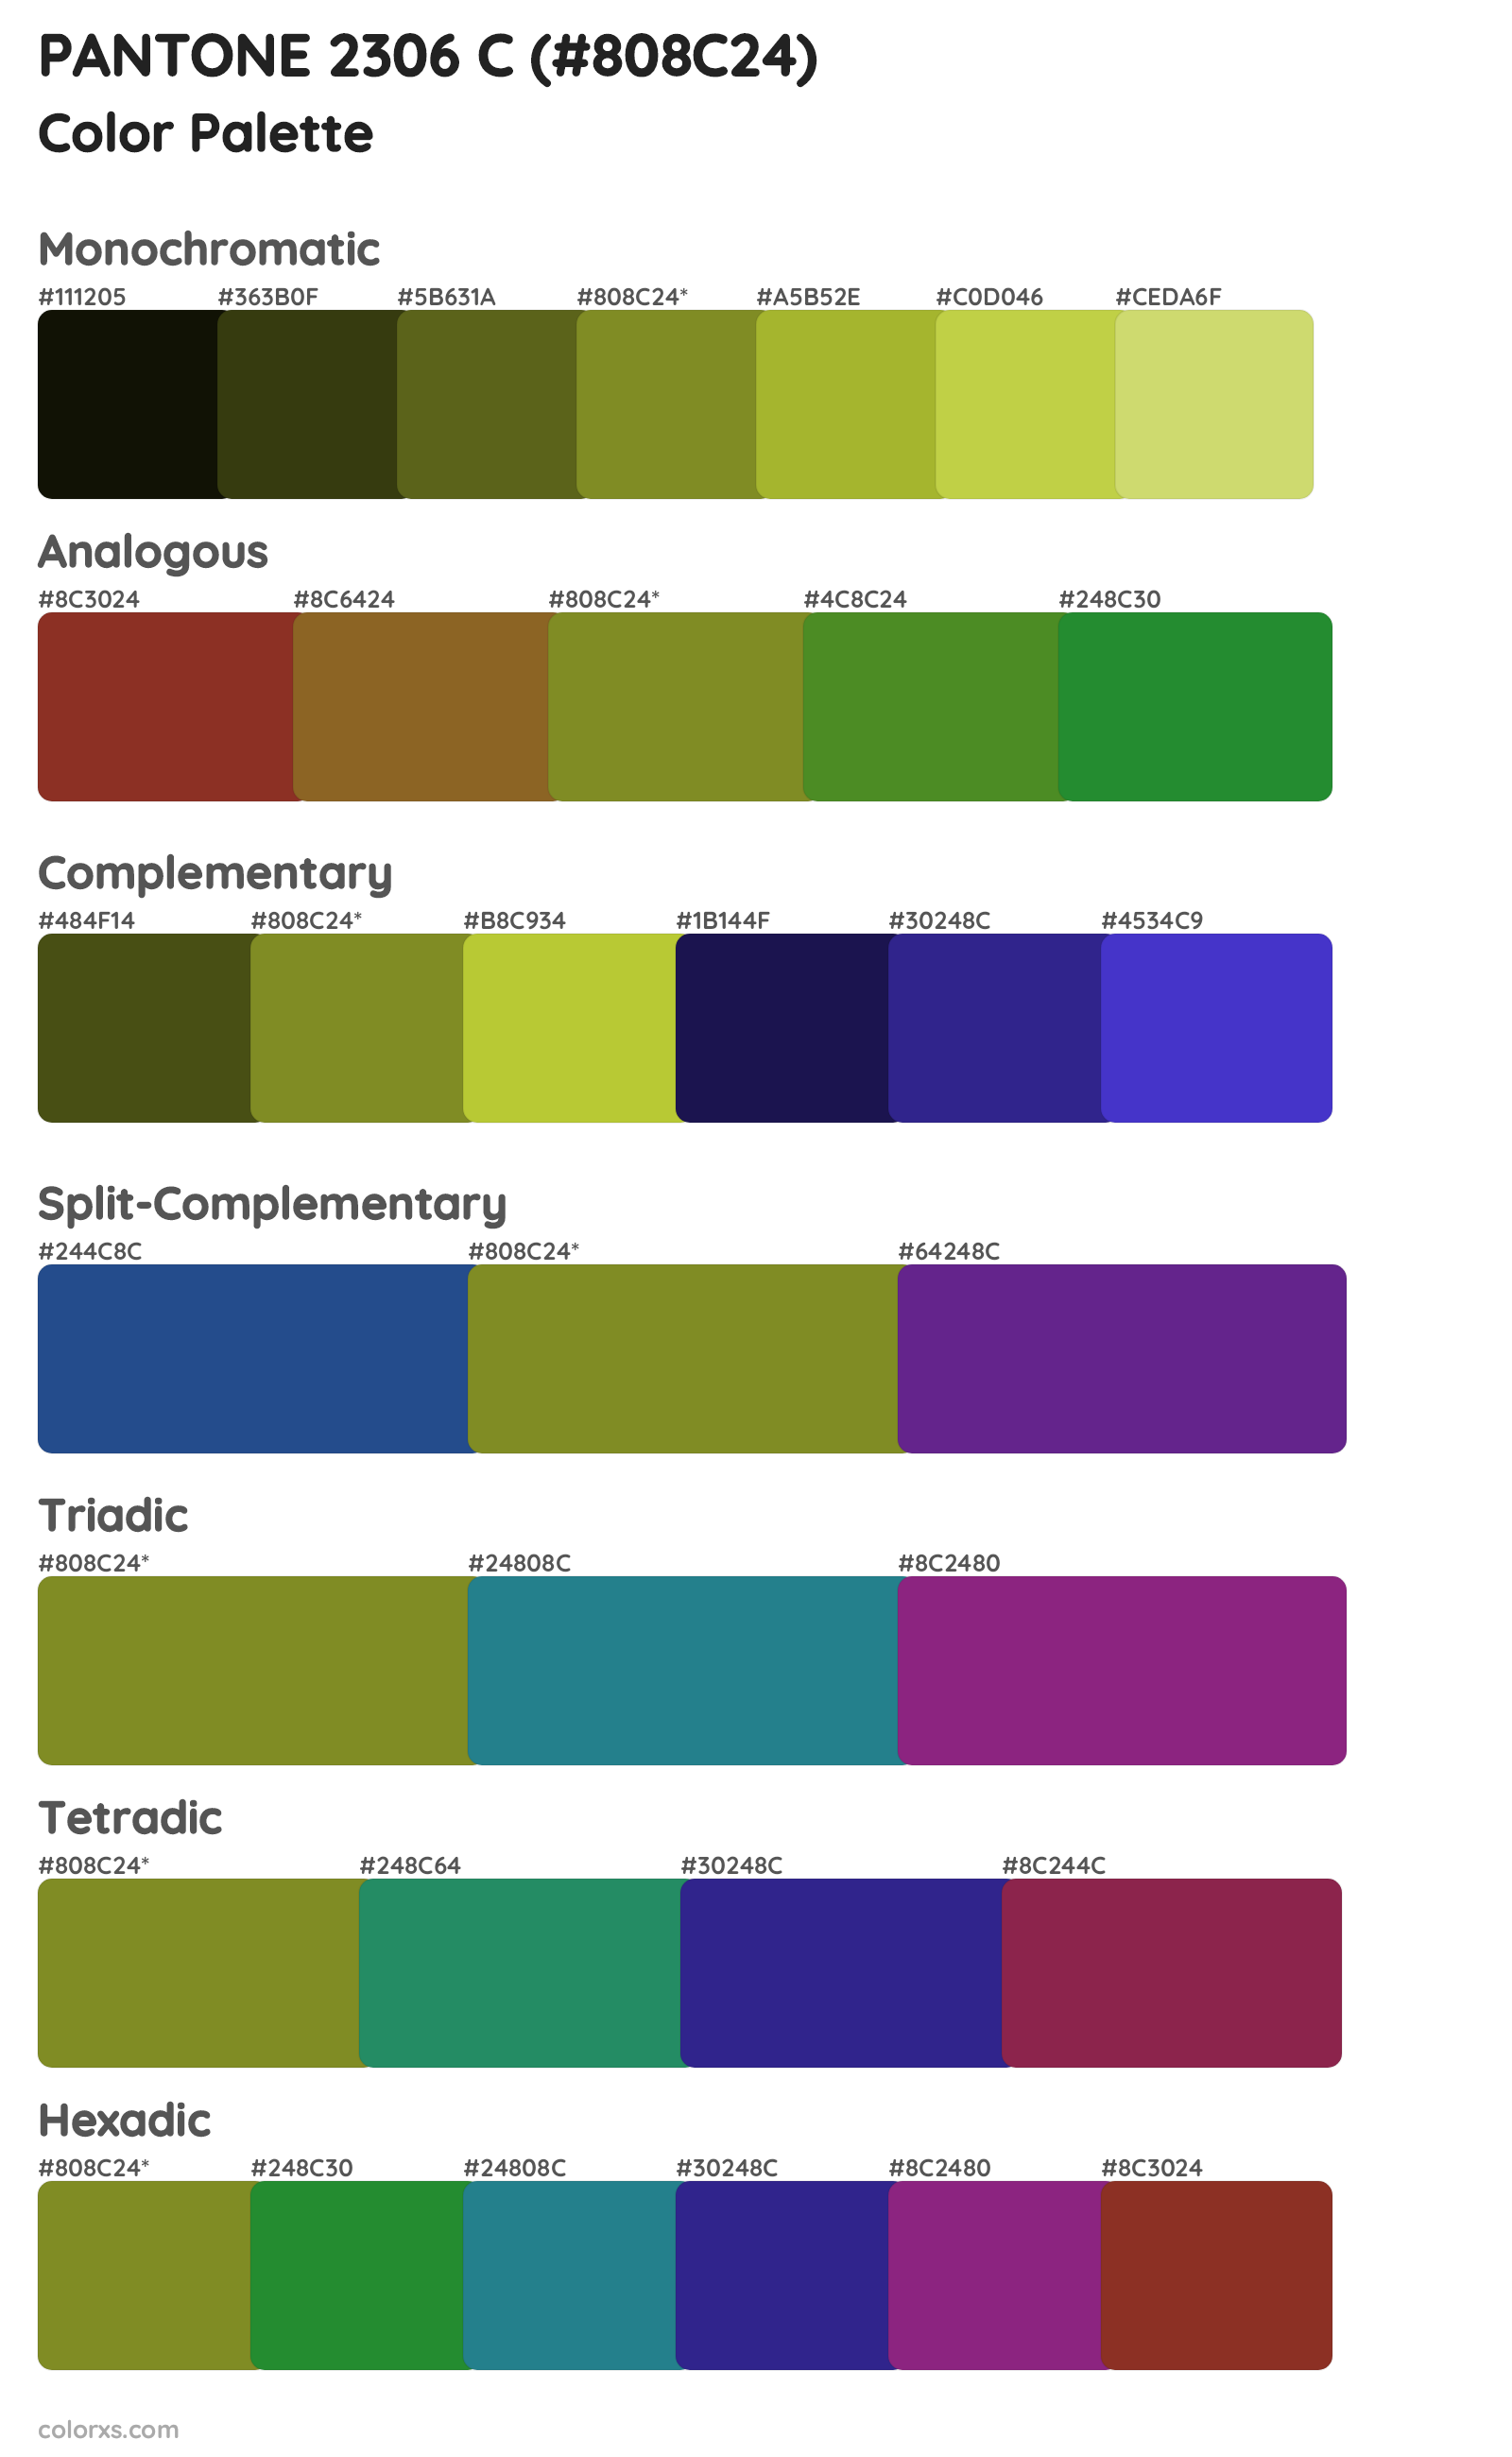 PANTONE 2306 C Color Scheme Palettes